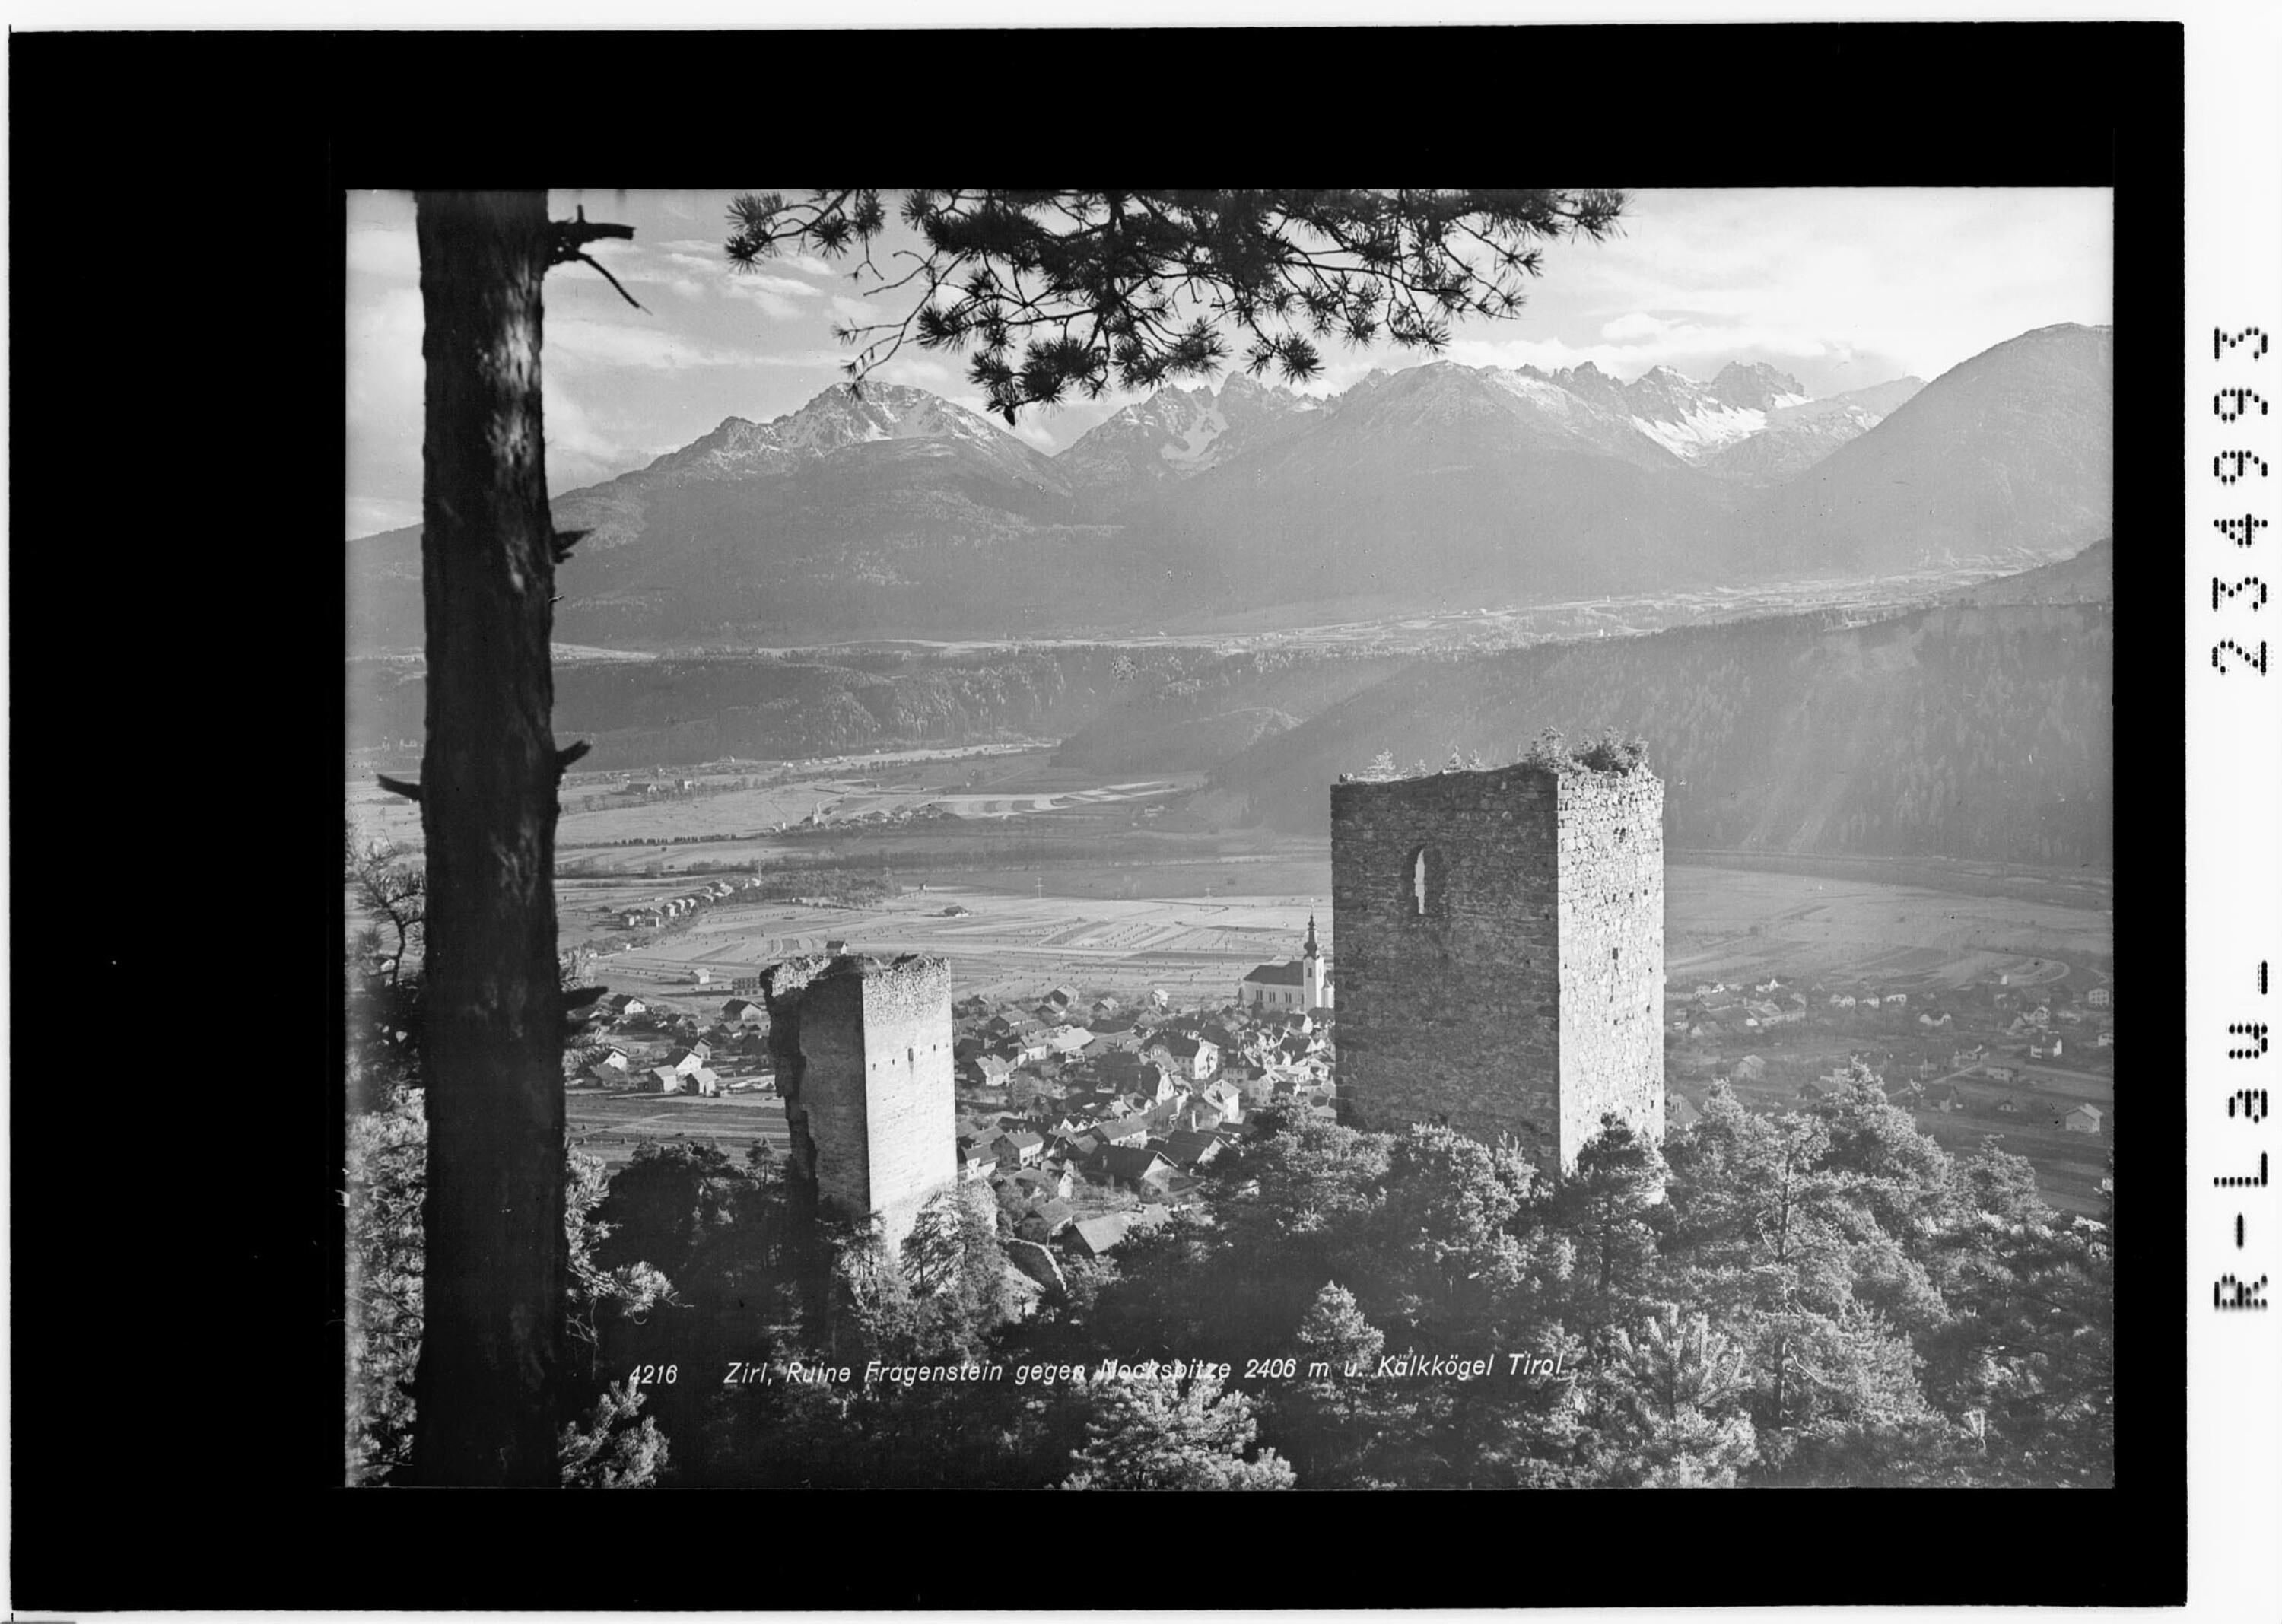 Zirl - Ruine Fragensteib gegen Nockspitze 2406 m und Kalkkögel / Tirol></div>


    <hr>
    <div class=